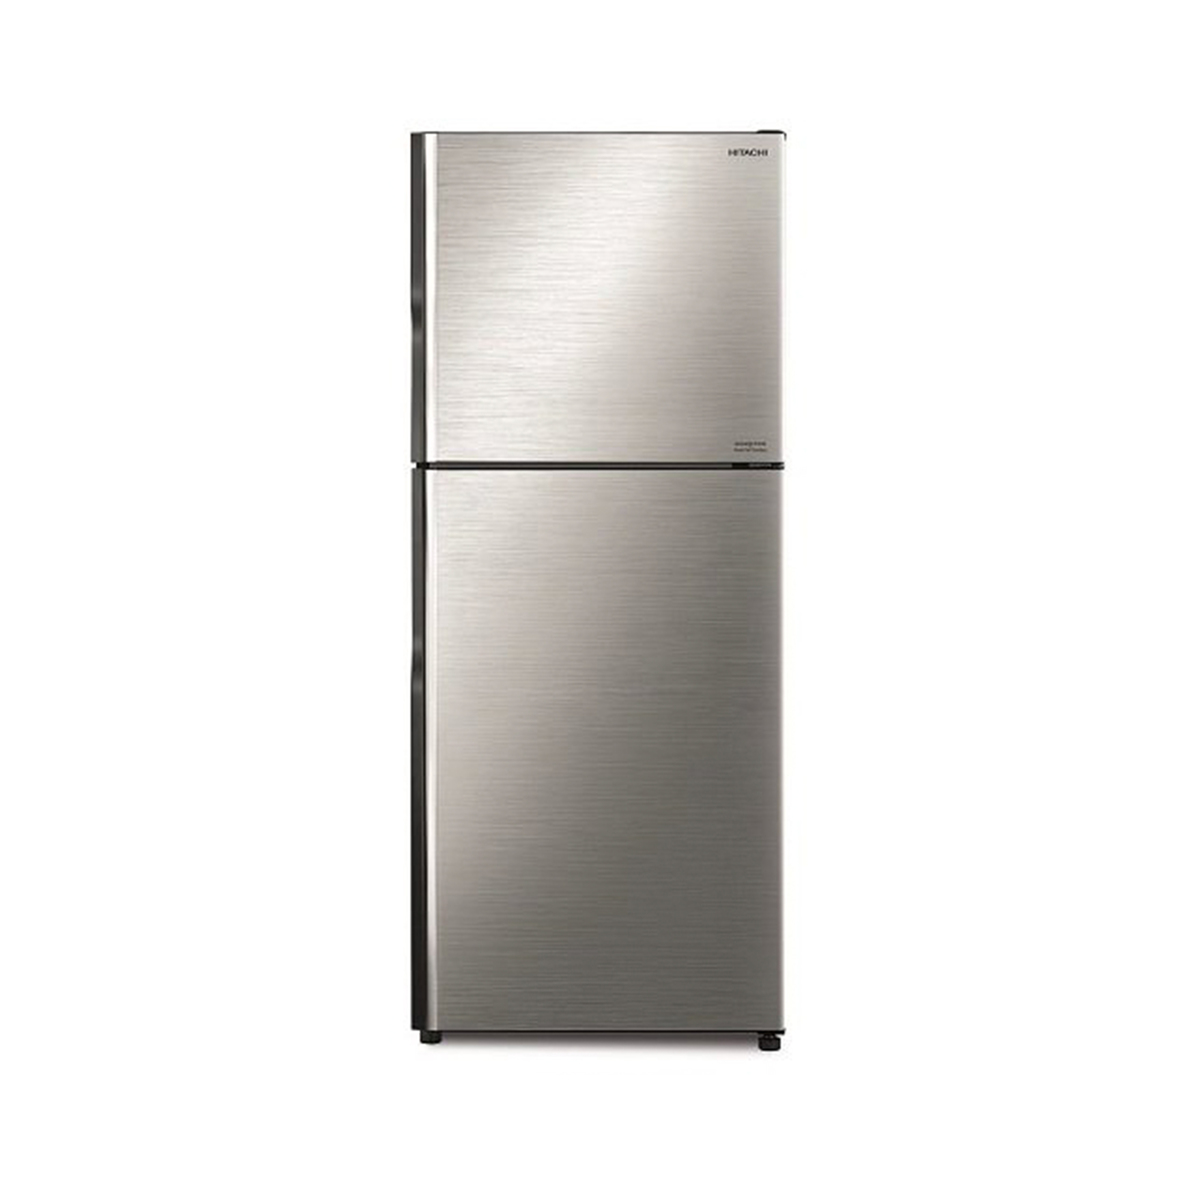 Hitachi Double Door Refrigerator RV450PK8KBSL 450Ltr